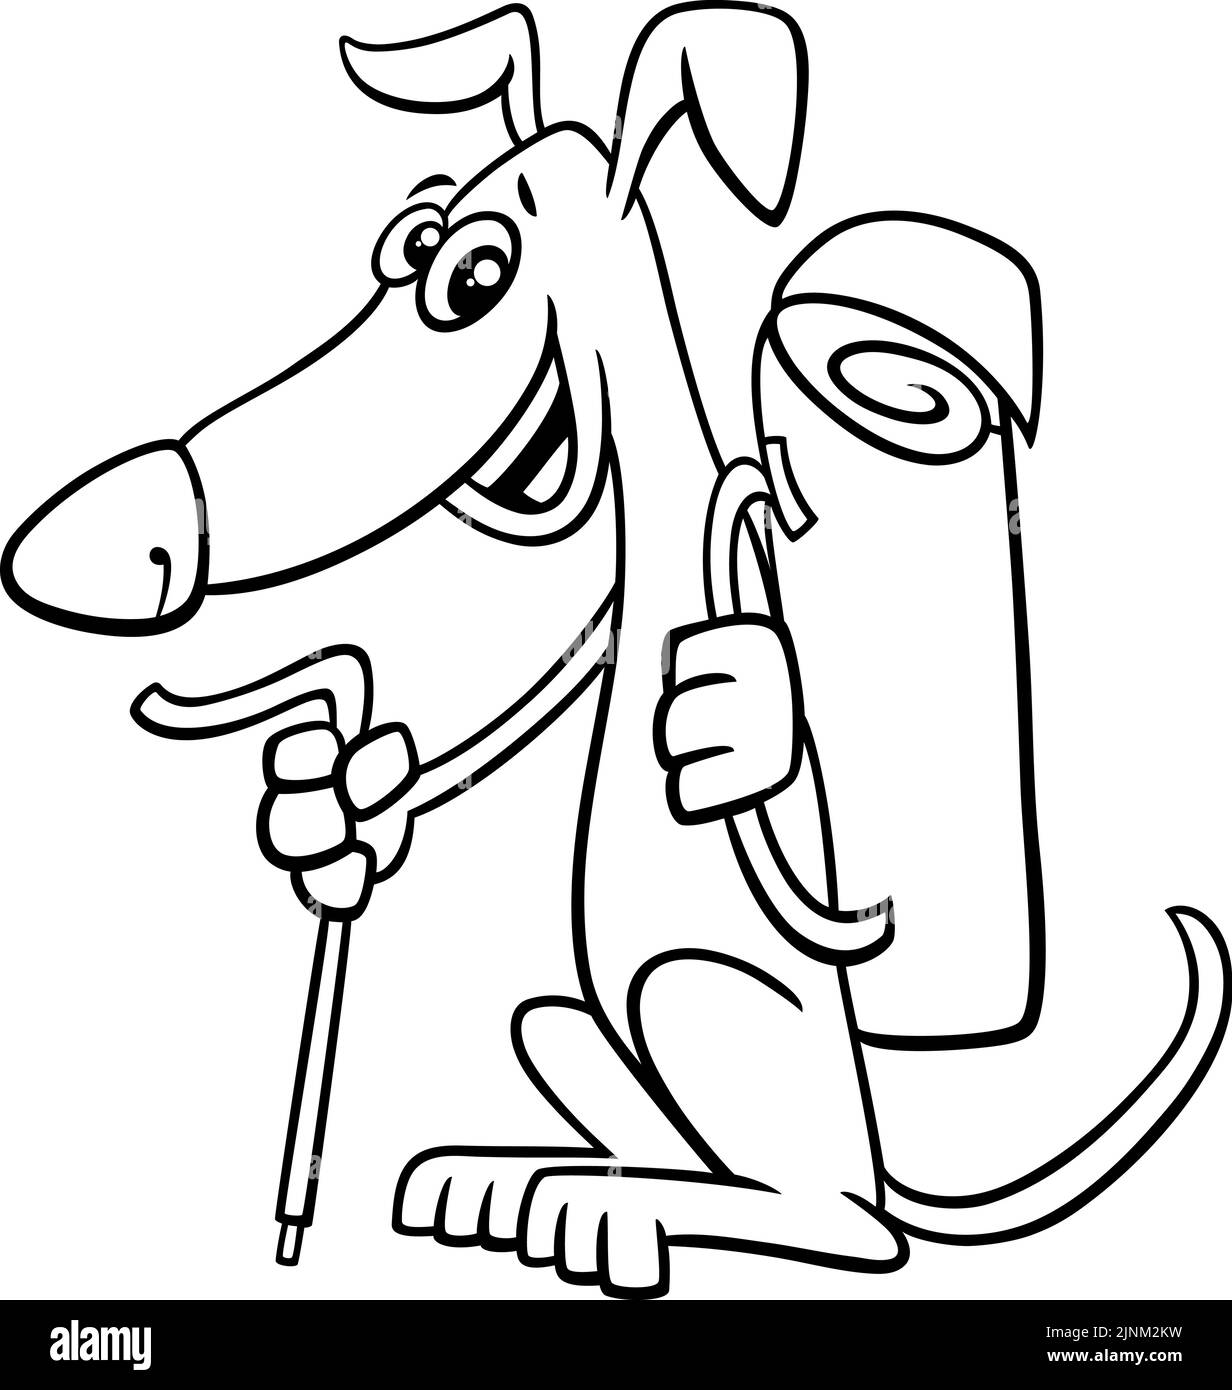 Illustration de dessin animé noir et blanc du personnage animal de chien de randonnée drôle avec une page de coloriage de sac à dos Illustration de Vecteur